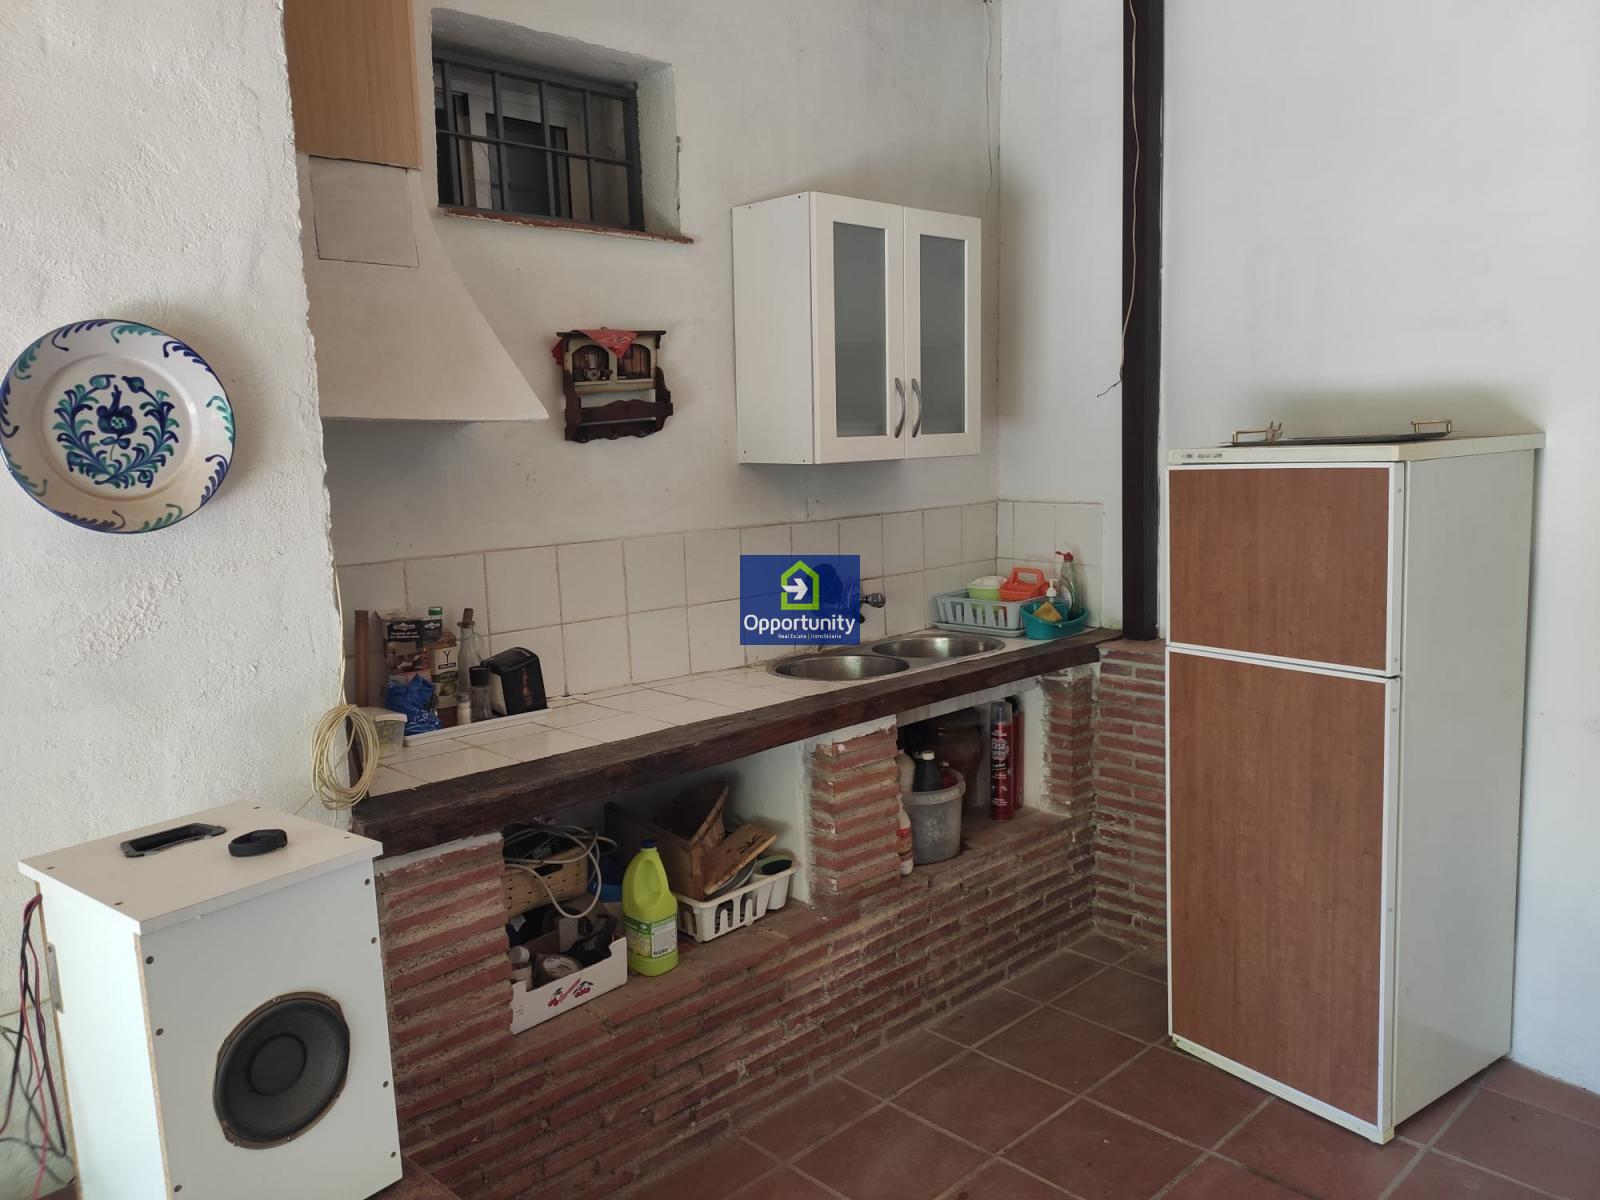 Дом Аренда на длительный срок На Cerrillo de Maracena (Granada), 750 €/месяц (Cезон)